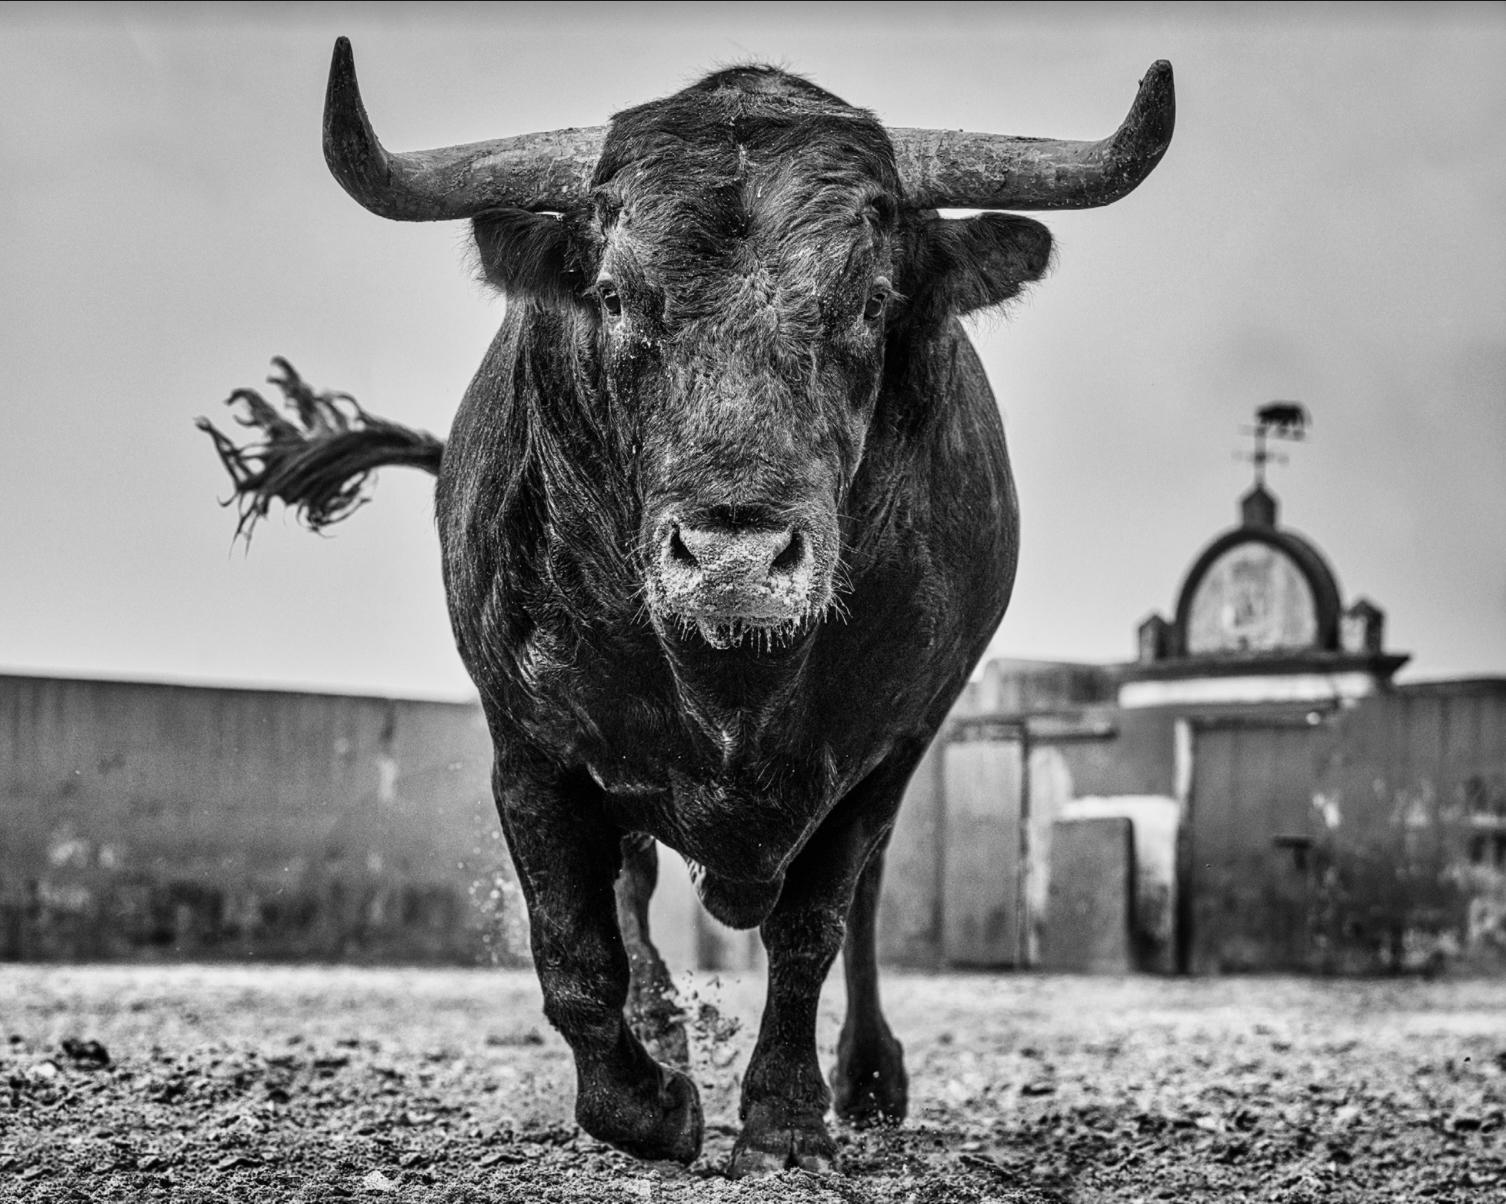 El Toro  - Photograph by David Yarrow